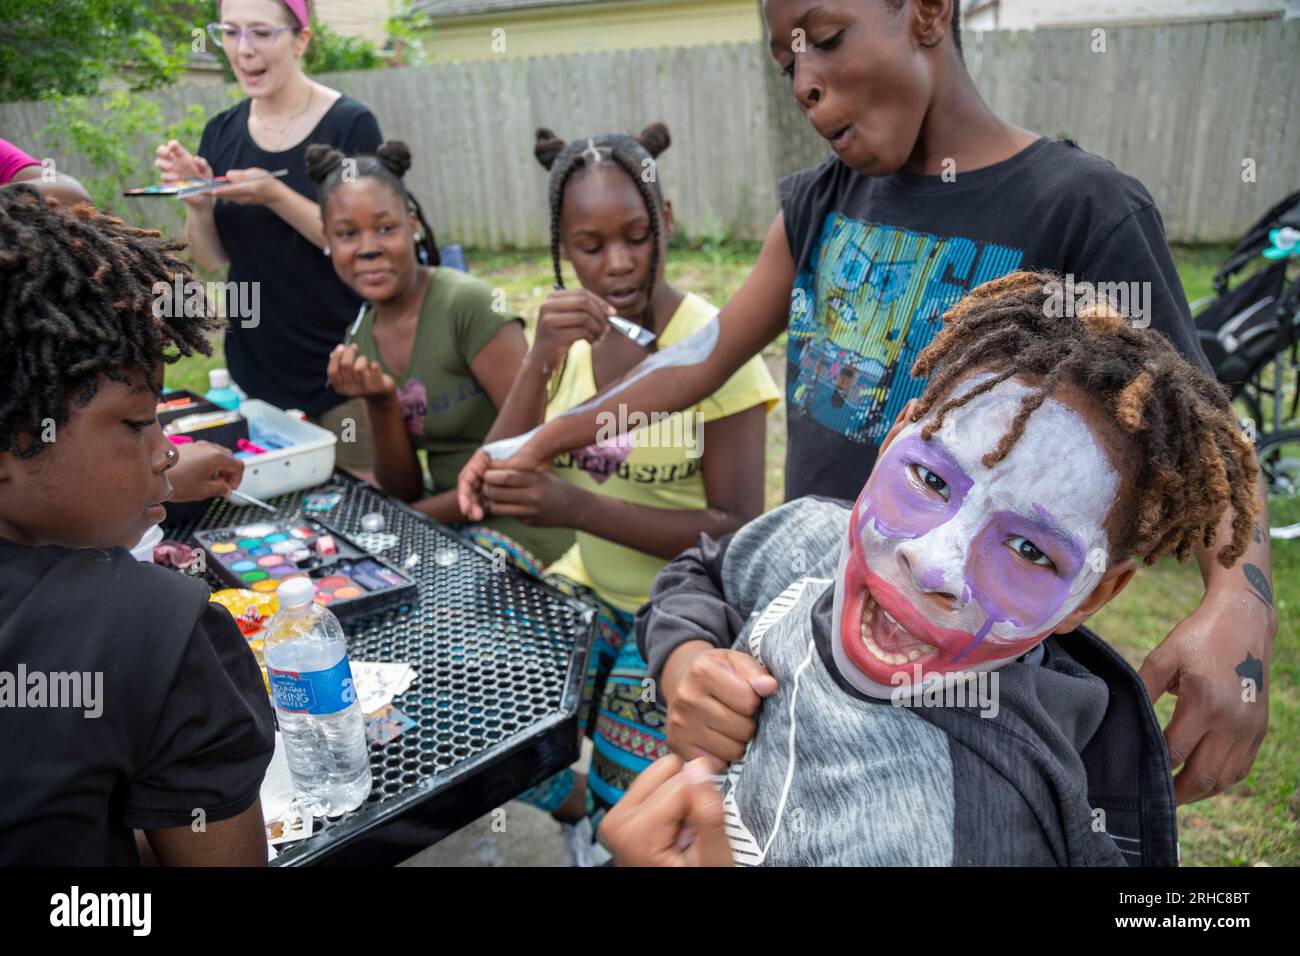 Detroit, Michigan - i bambini si divertono a dipingere il viso e il corpo mentre il quartiere di Morningside organizza un picnic/festa chiamato "Summer Sizzler". Lo era Foto Stock